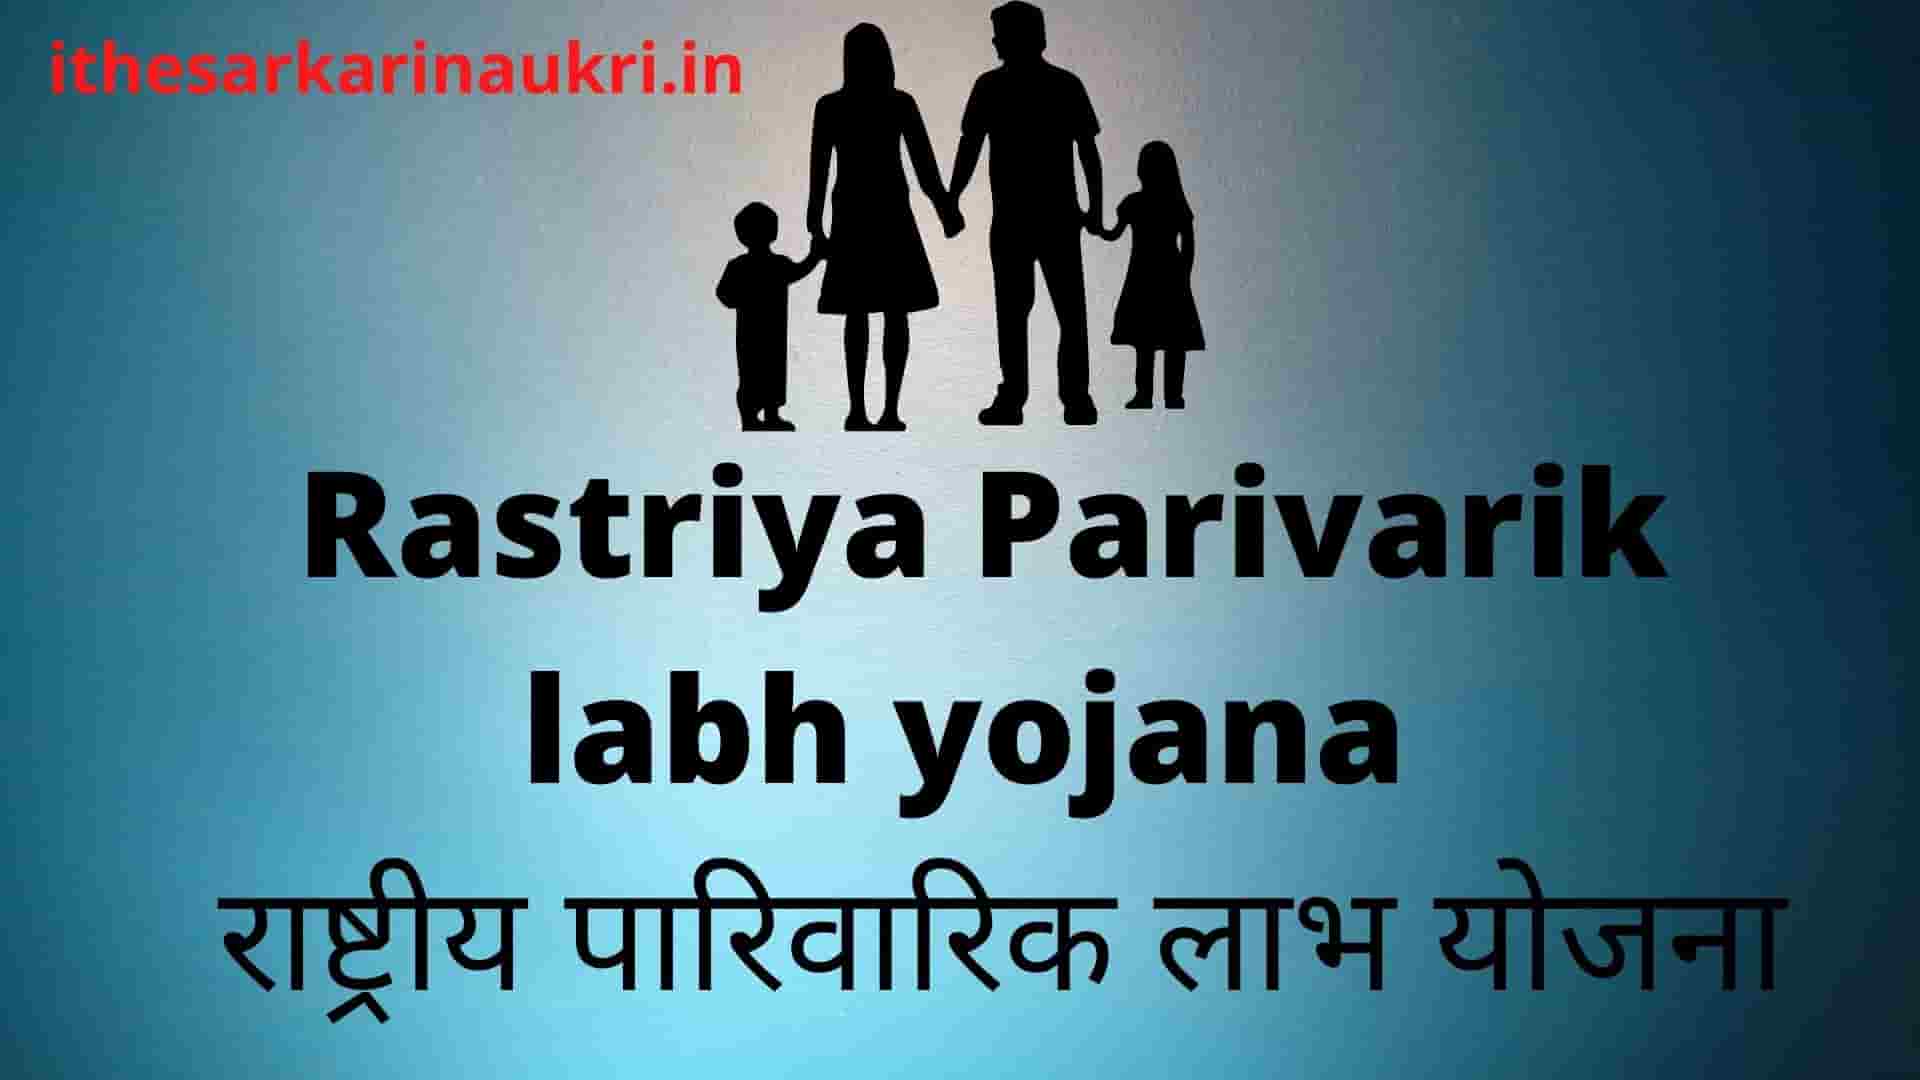 Rastriya Parivarik labh yojana 2021